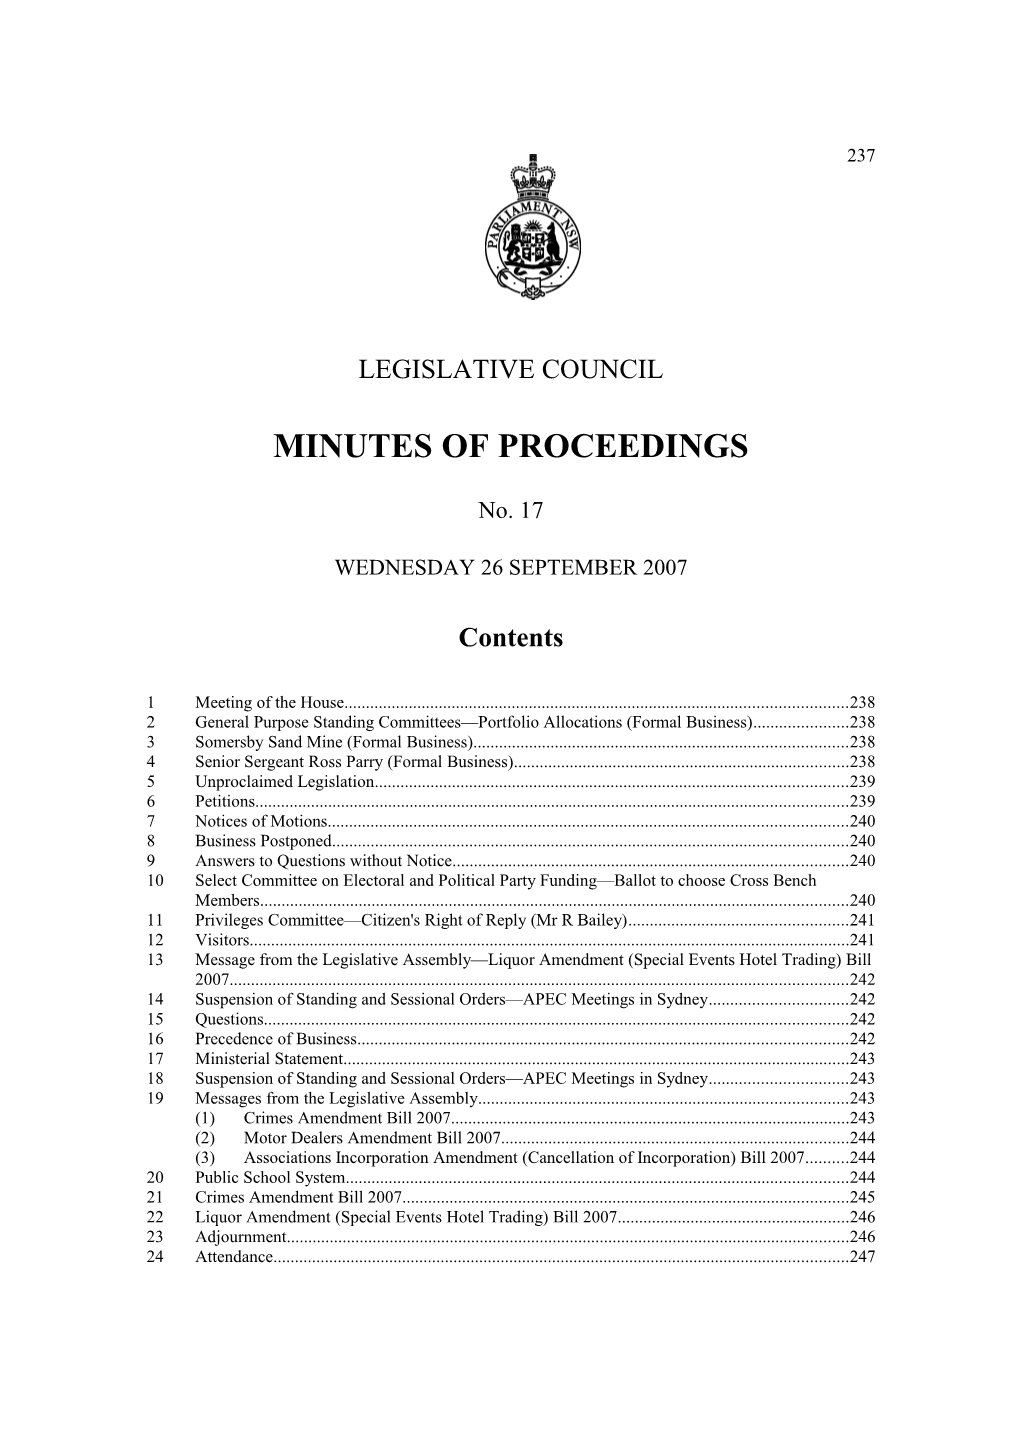 Legislative Council Minutes No. 17 Wednesday 26 September 2007